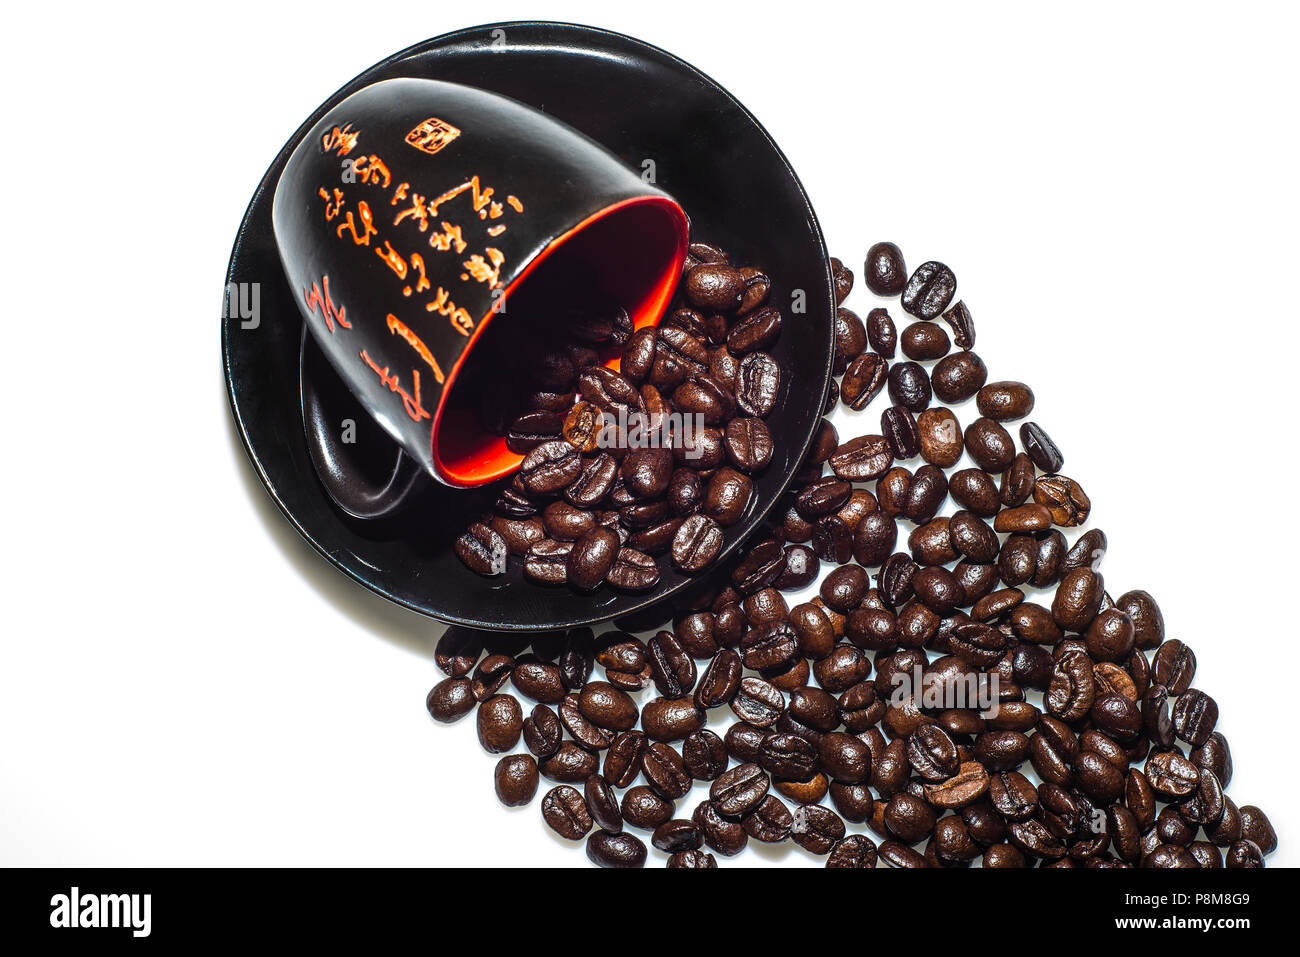 Una grande selezione di caffè gratuito stock foto. Trovare un diverso tipo di immagini di caffè incluse immagini di tazze di caffè, tazze da caffè, caffè in grani Foto Stock